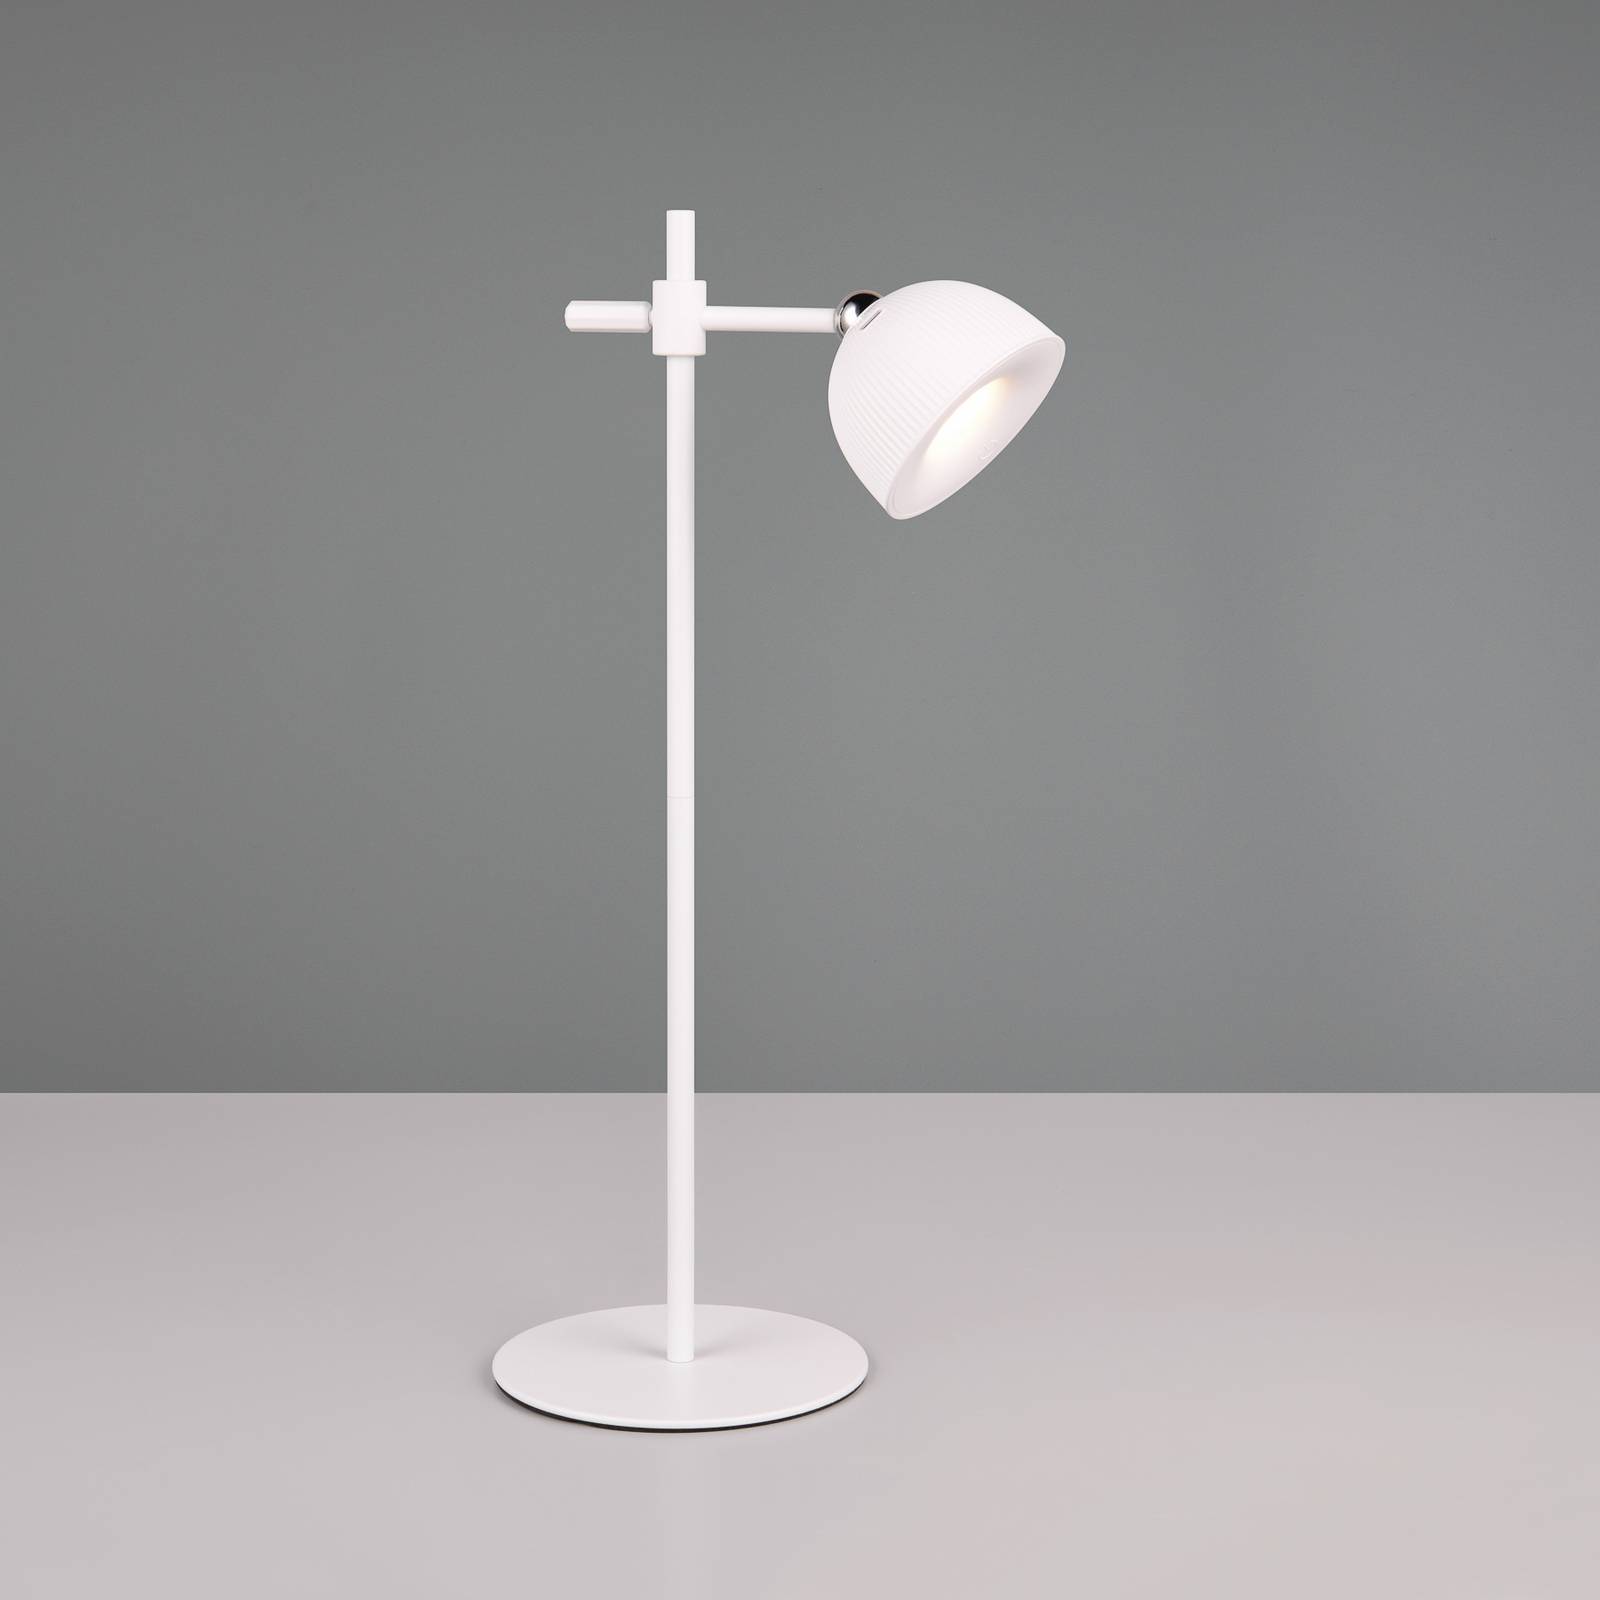 Dobíjacia stolová lampa Maxima LED, biela, výška 41 cm, plast